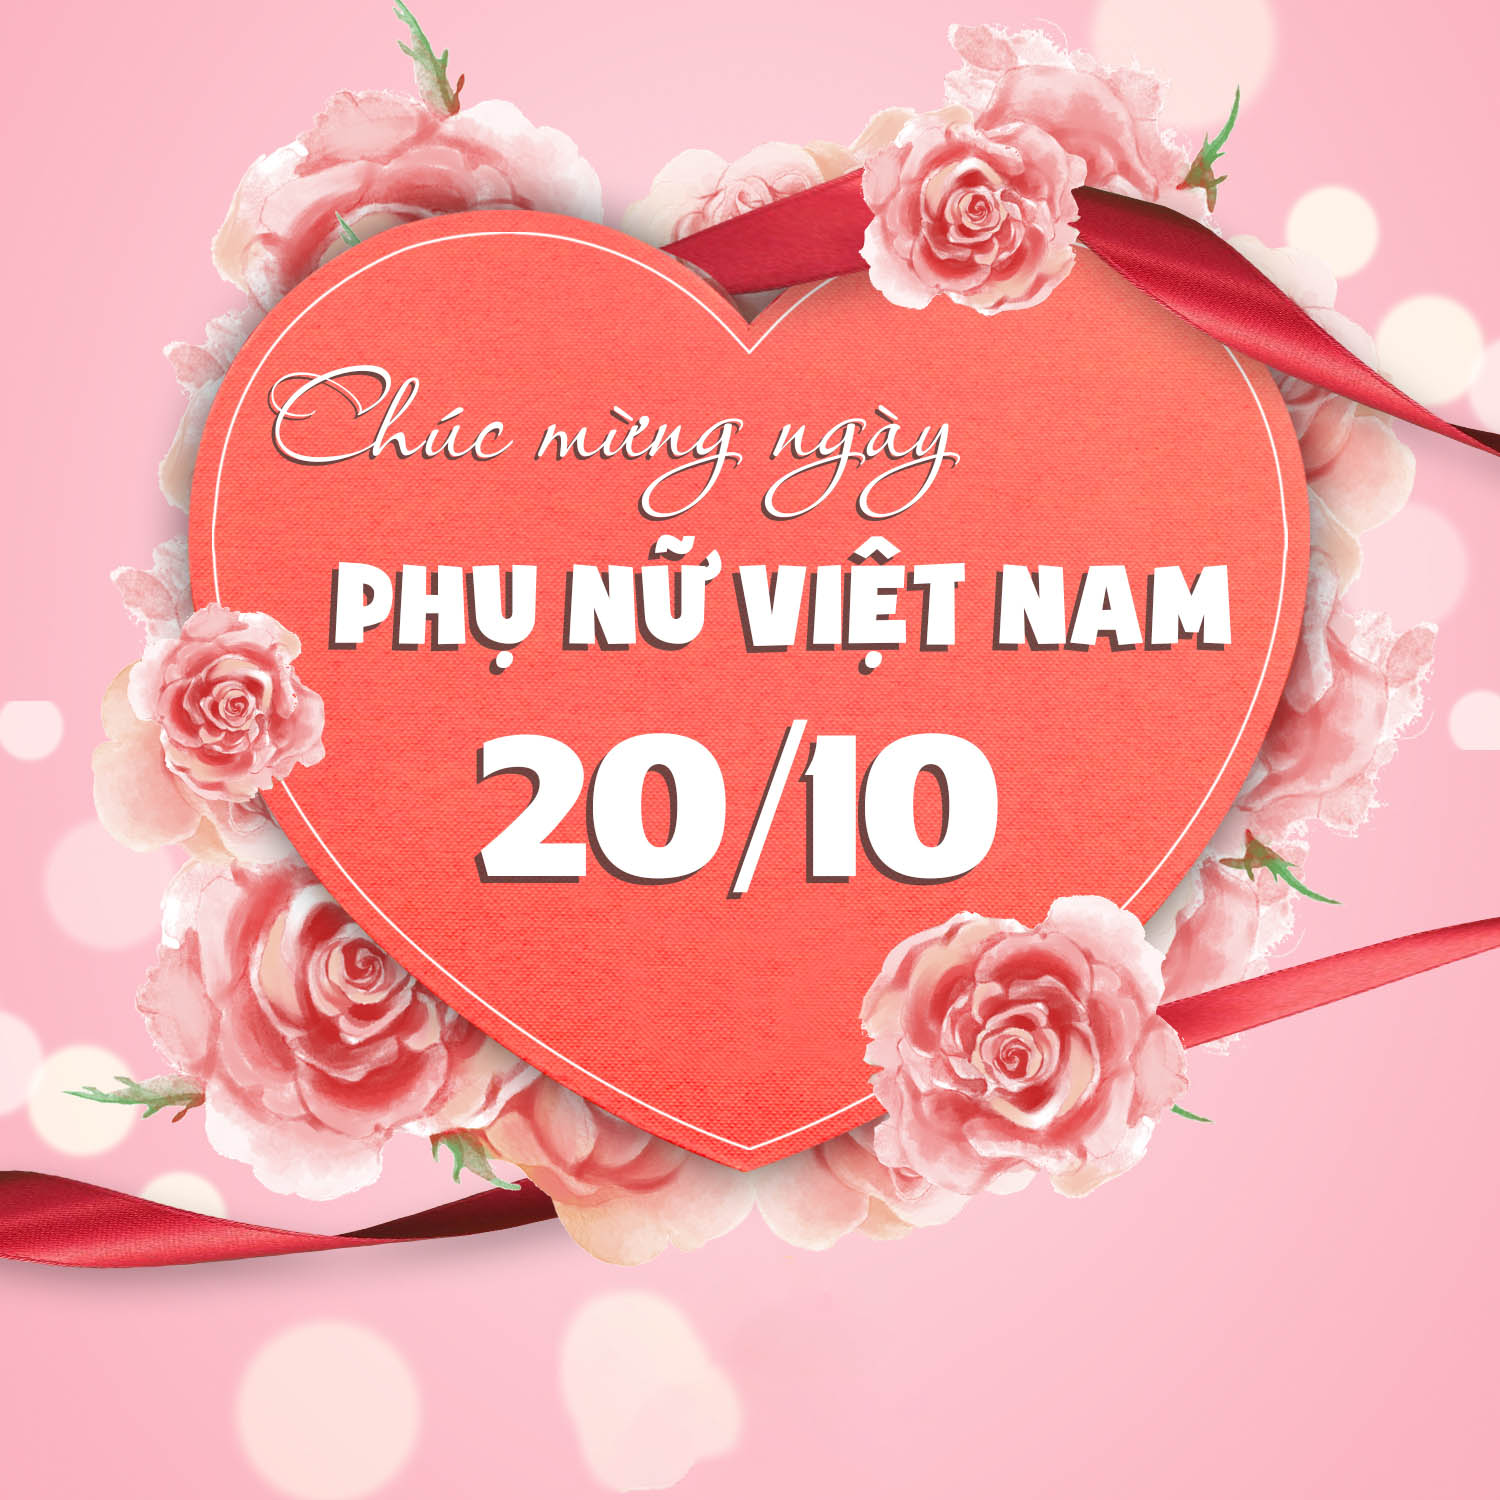 Ngày Phụ nữ Việt Nam 20/10 ra đời vào ngày thành lập Hội Liên hiệp Phụ nữ - 20/10/1930